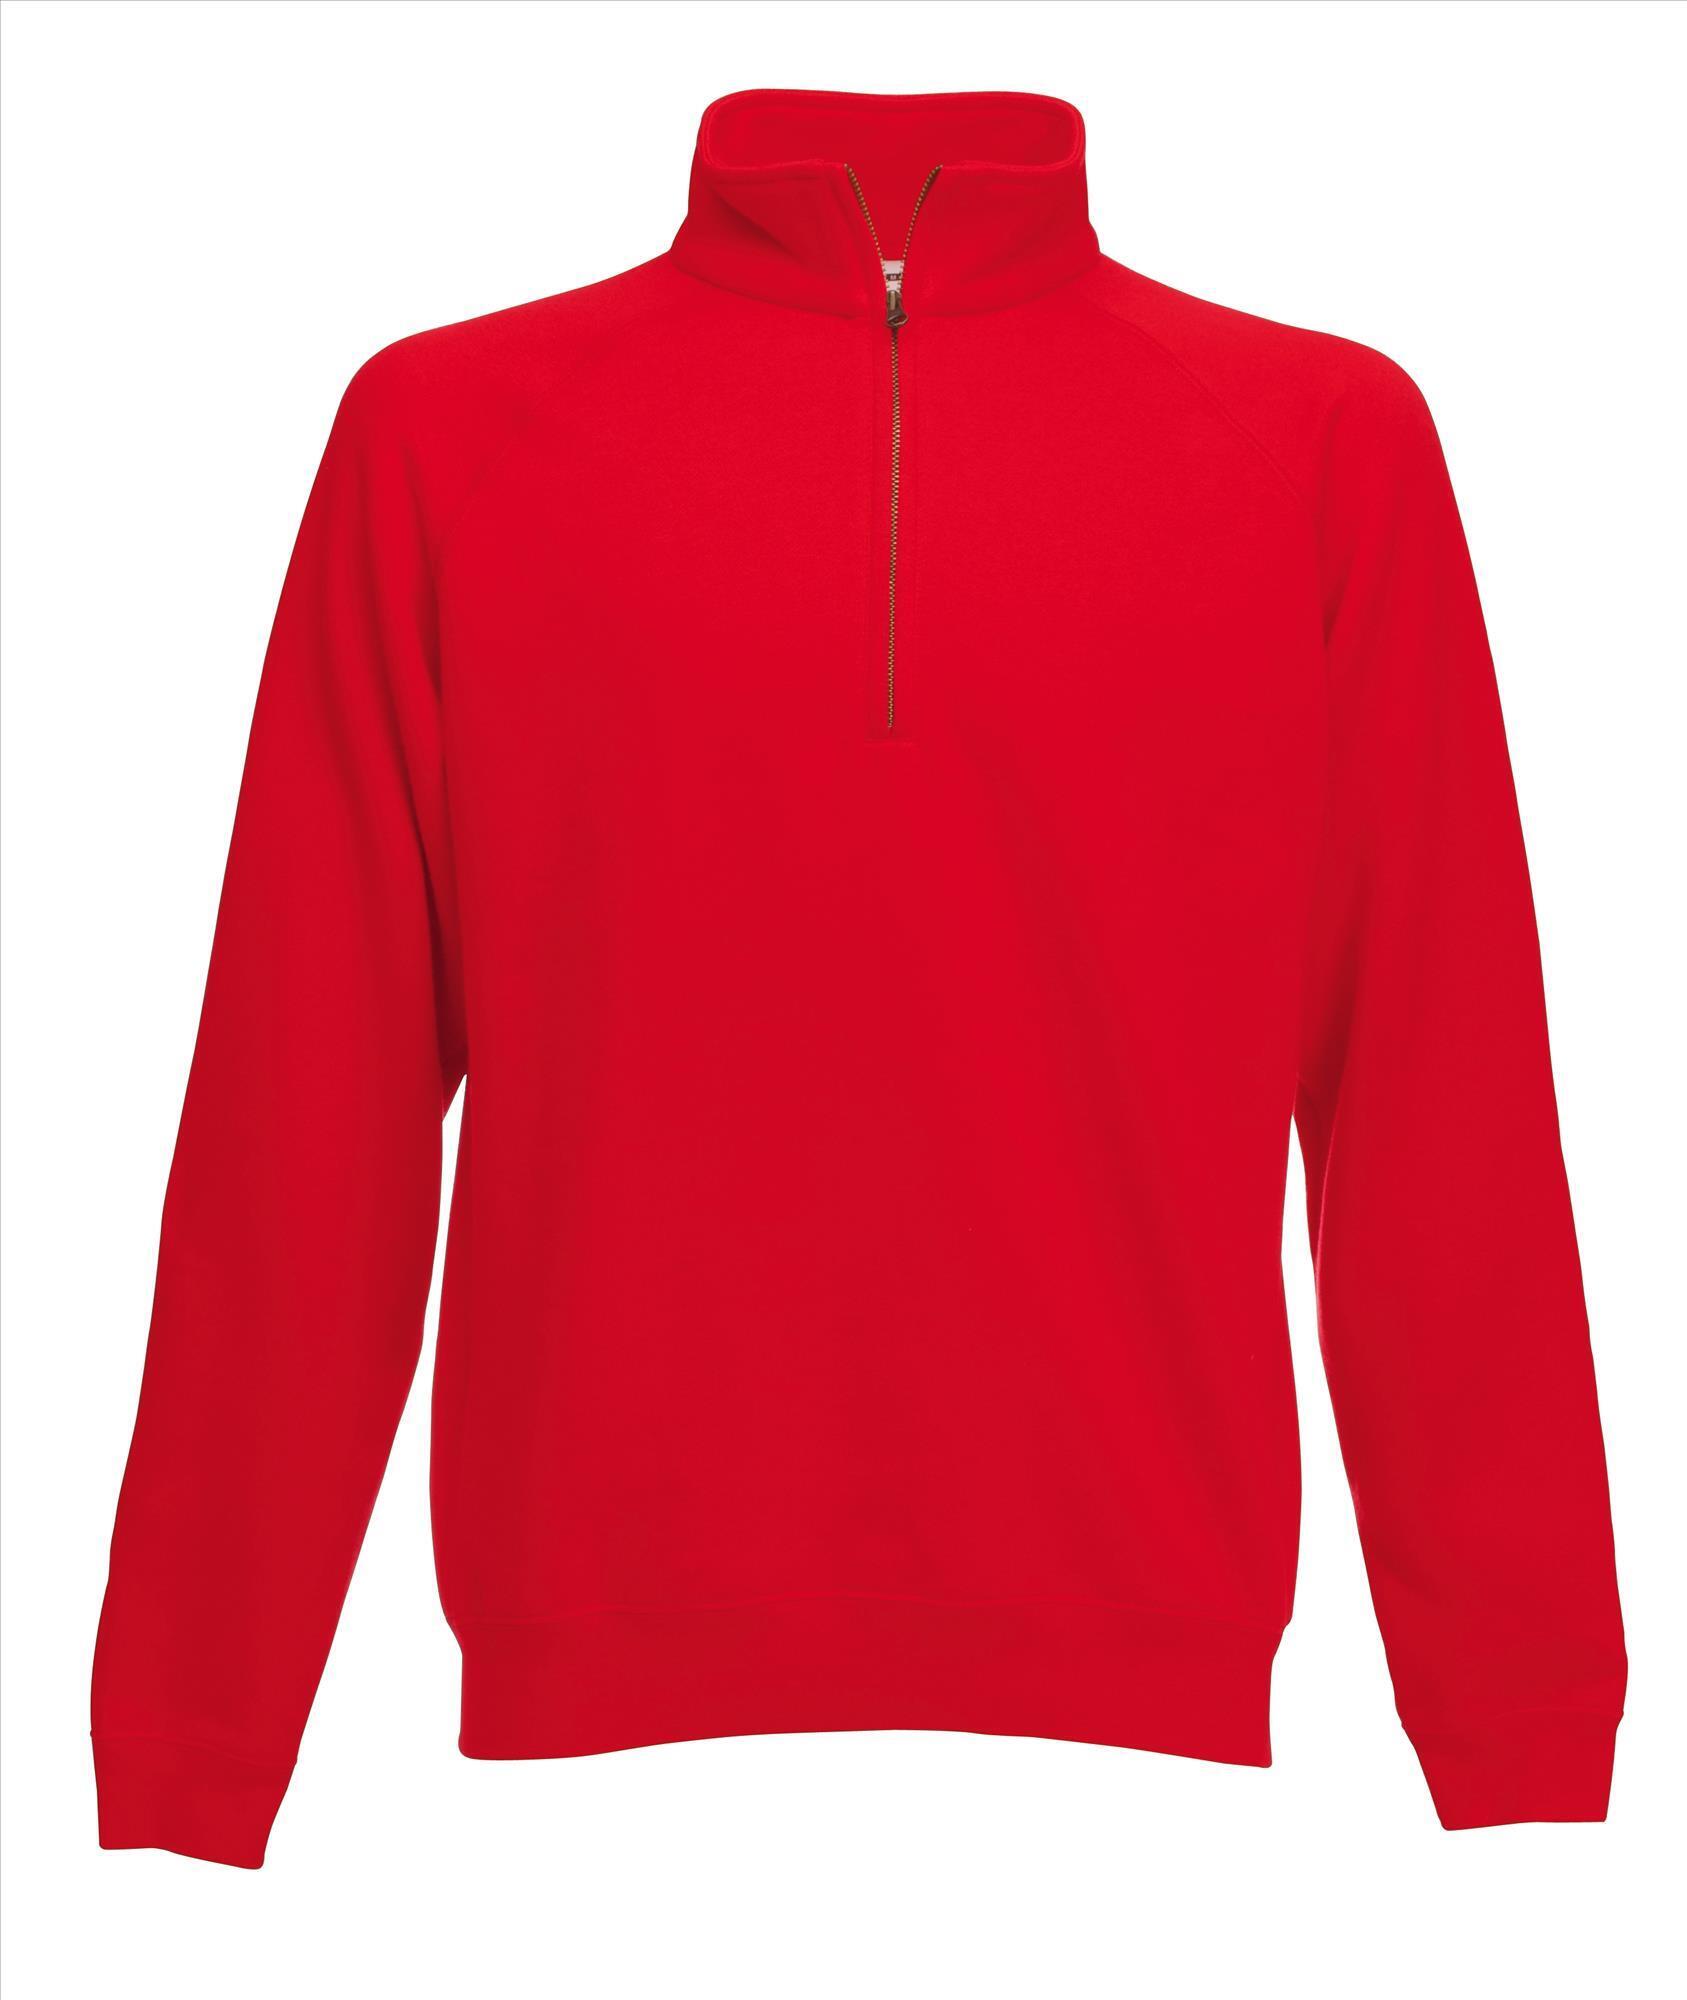 Sweater voor hem in de kleur rood te personaliseren